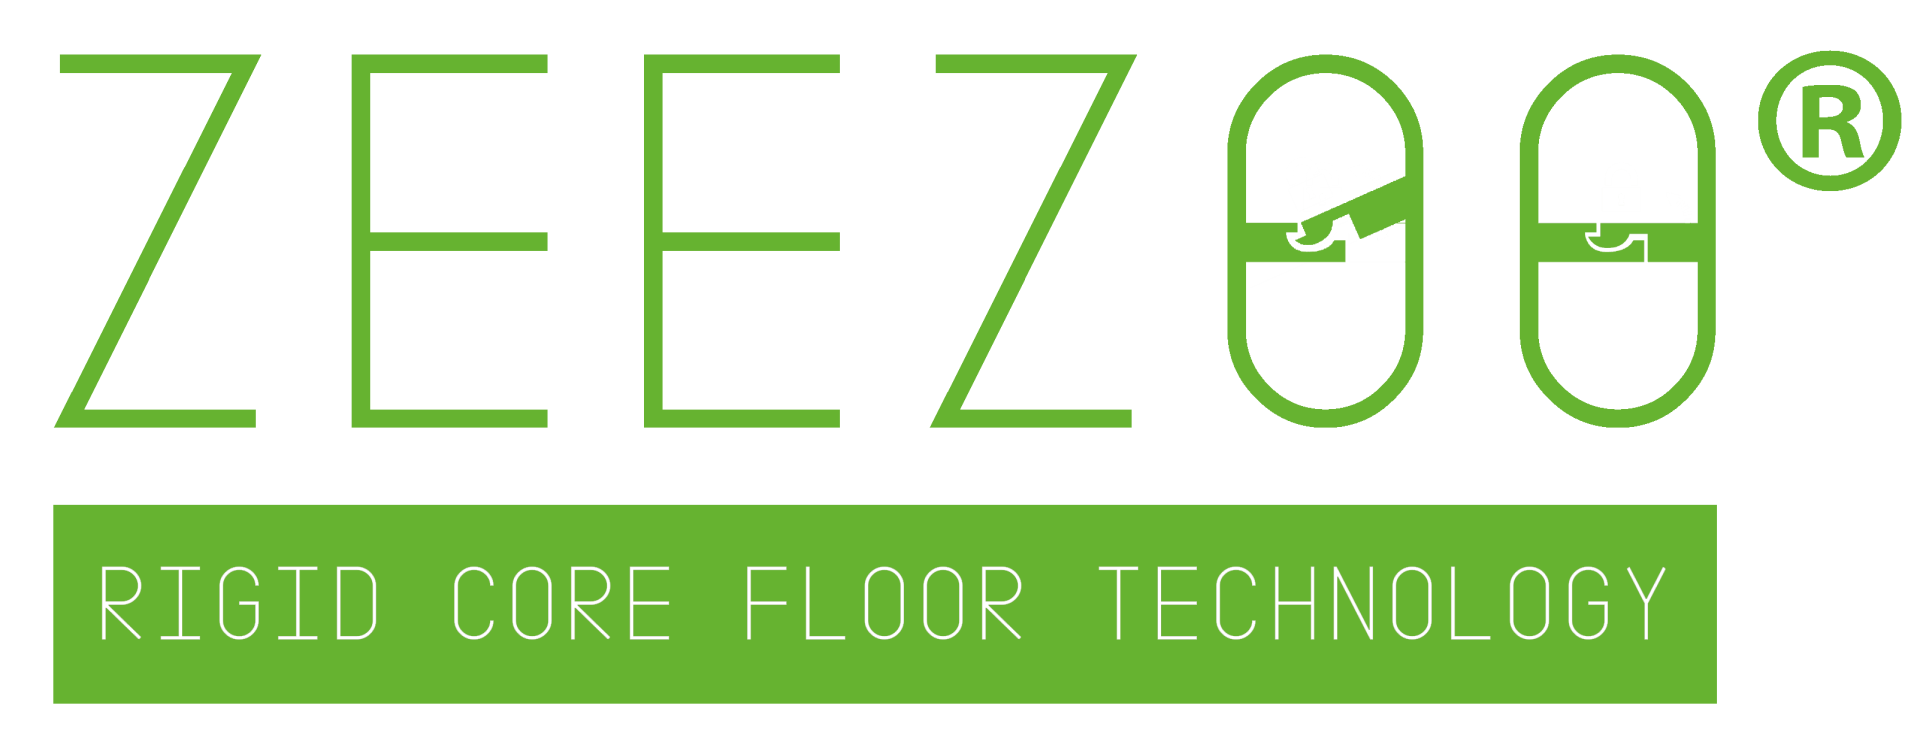 Zeezoo rigid core click vinyl flooring - Image 2 of 2